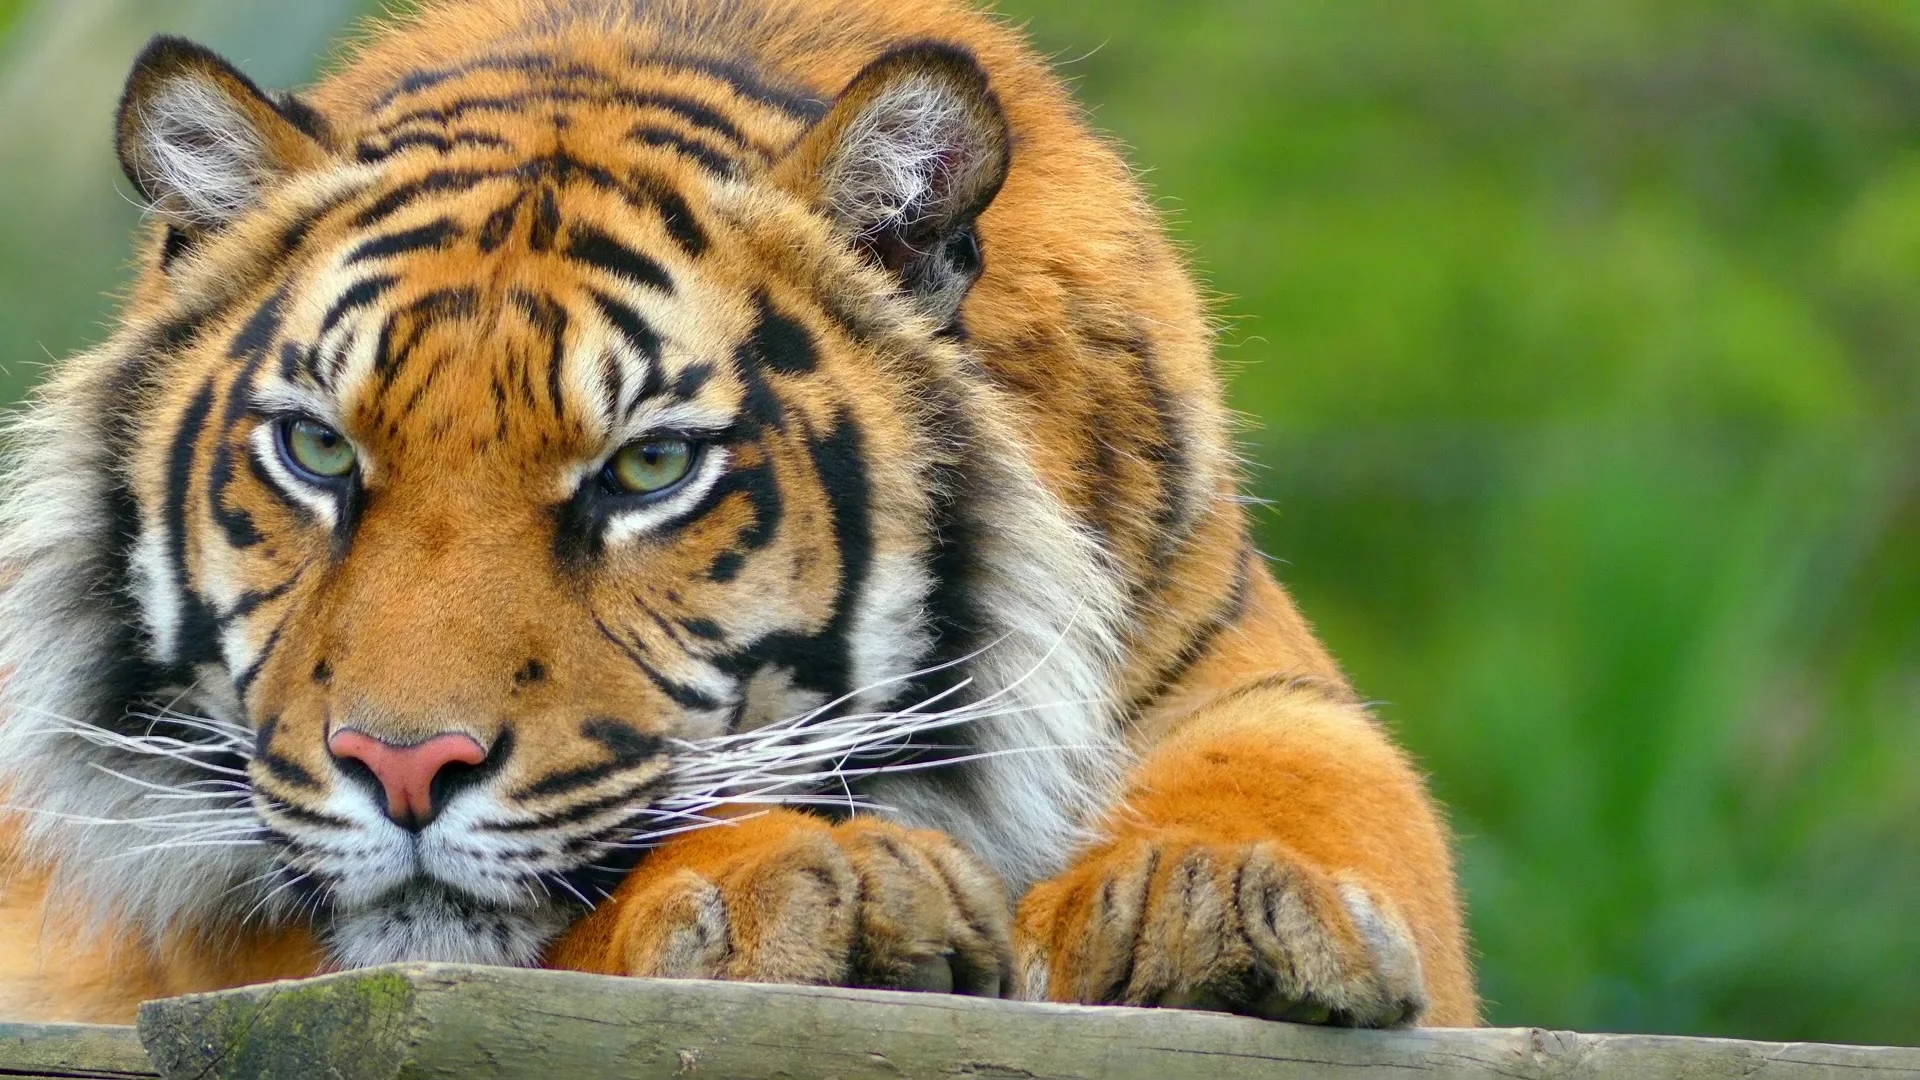 Sunbean tiger